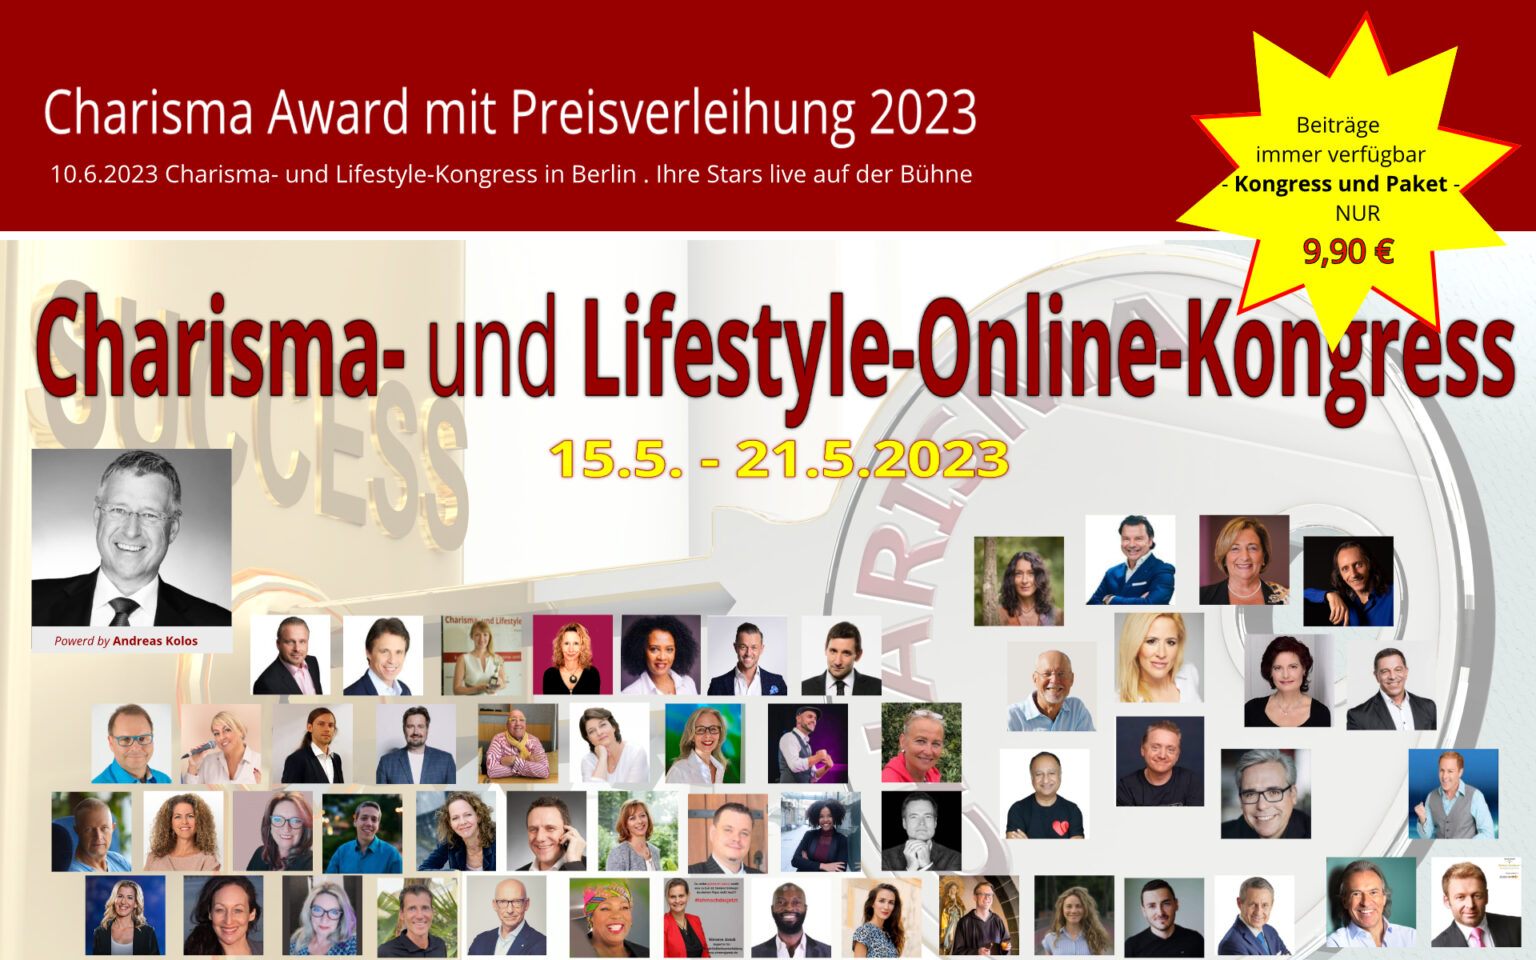 Charisma und Lifestyle-Online-Kongress 2023